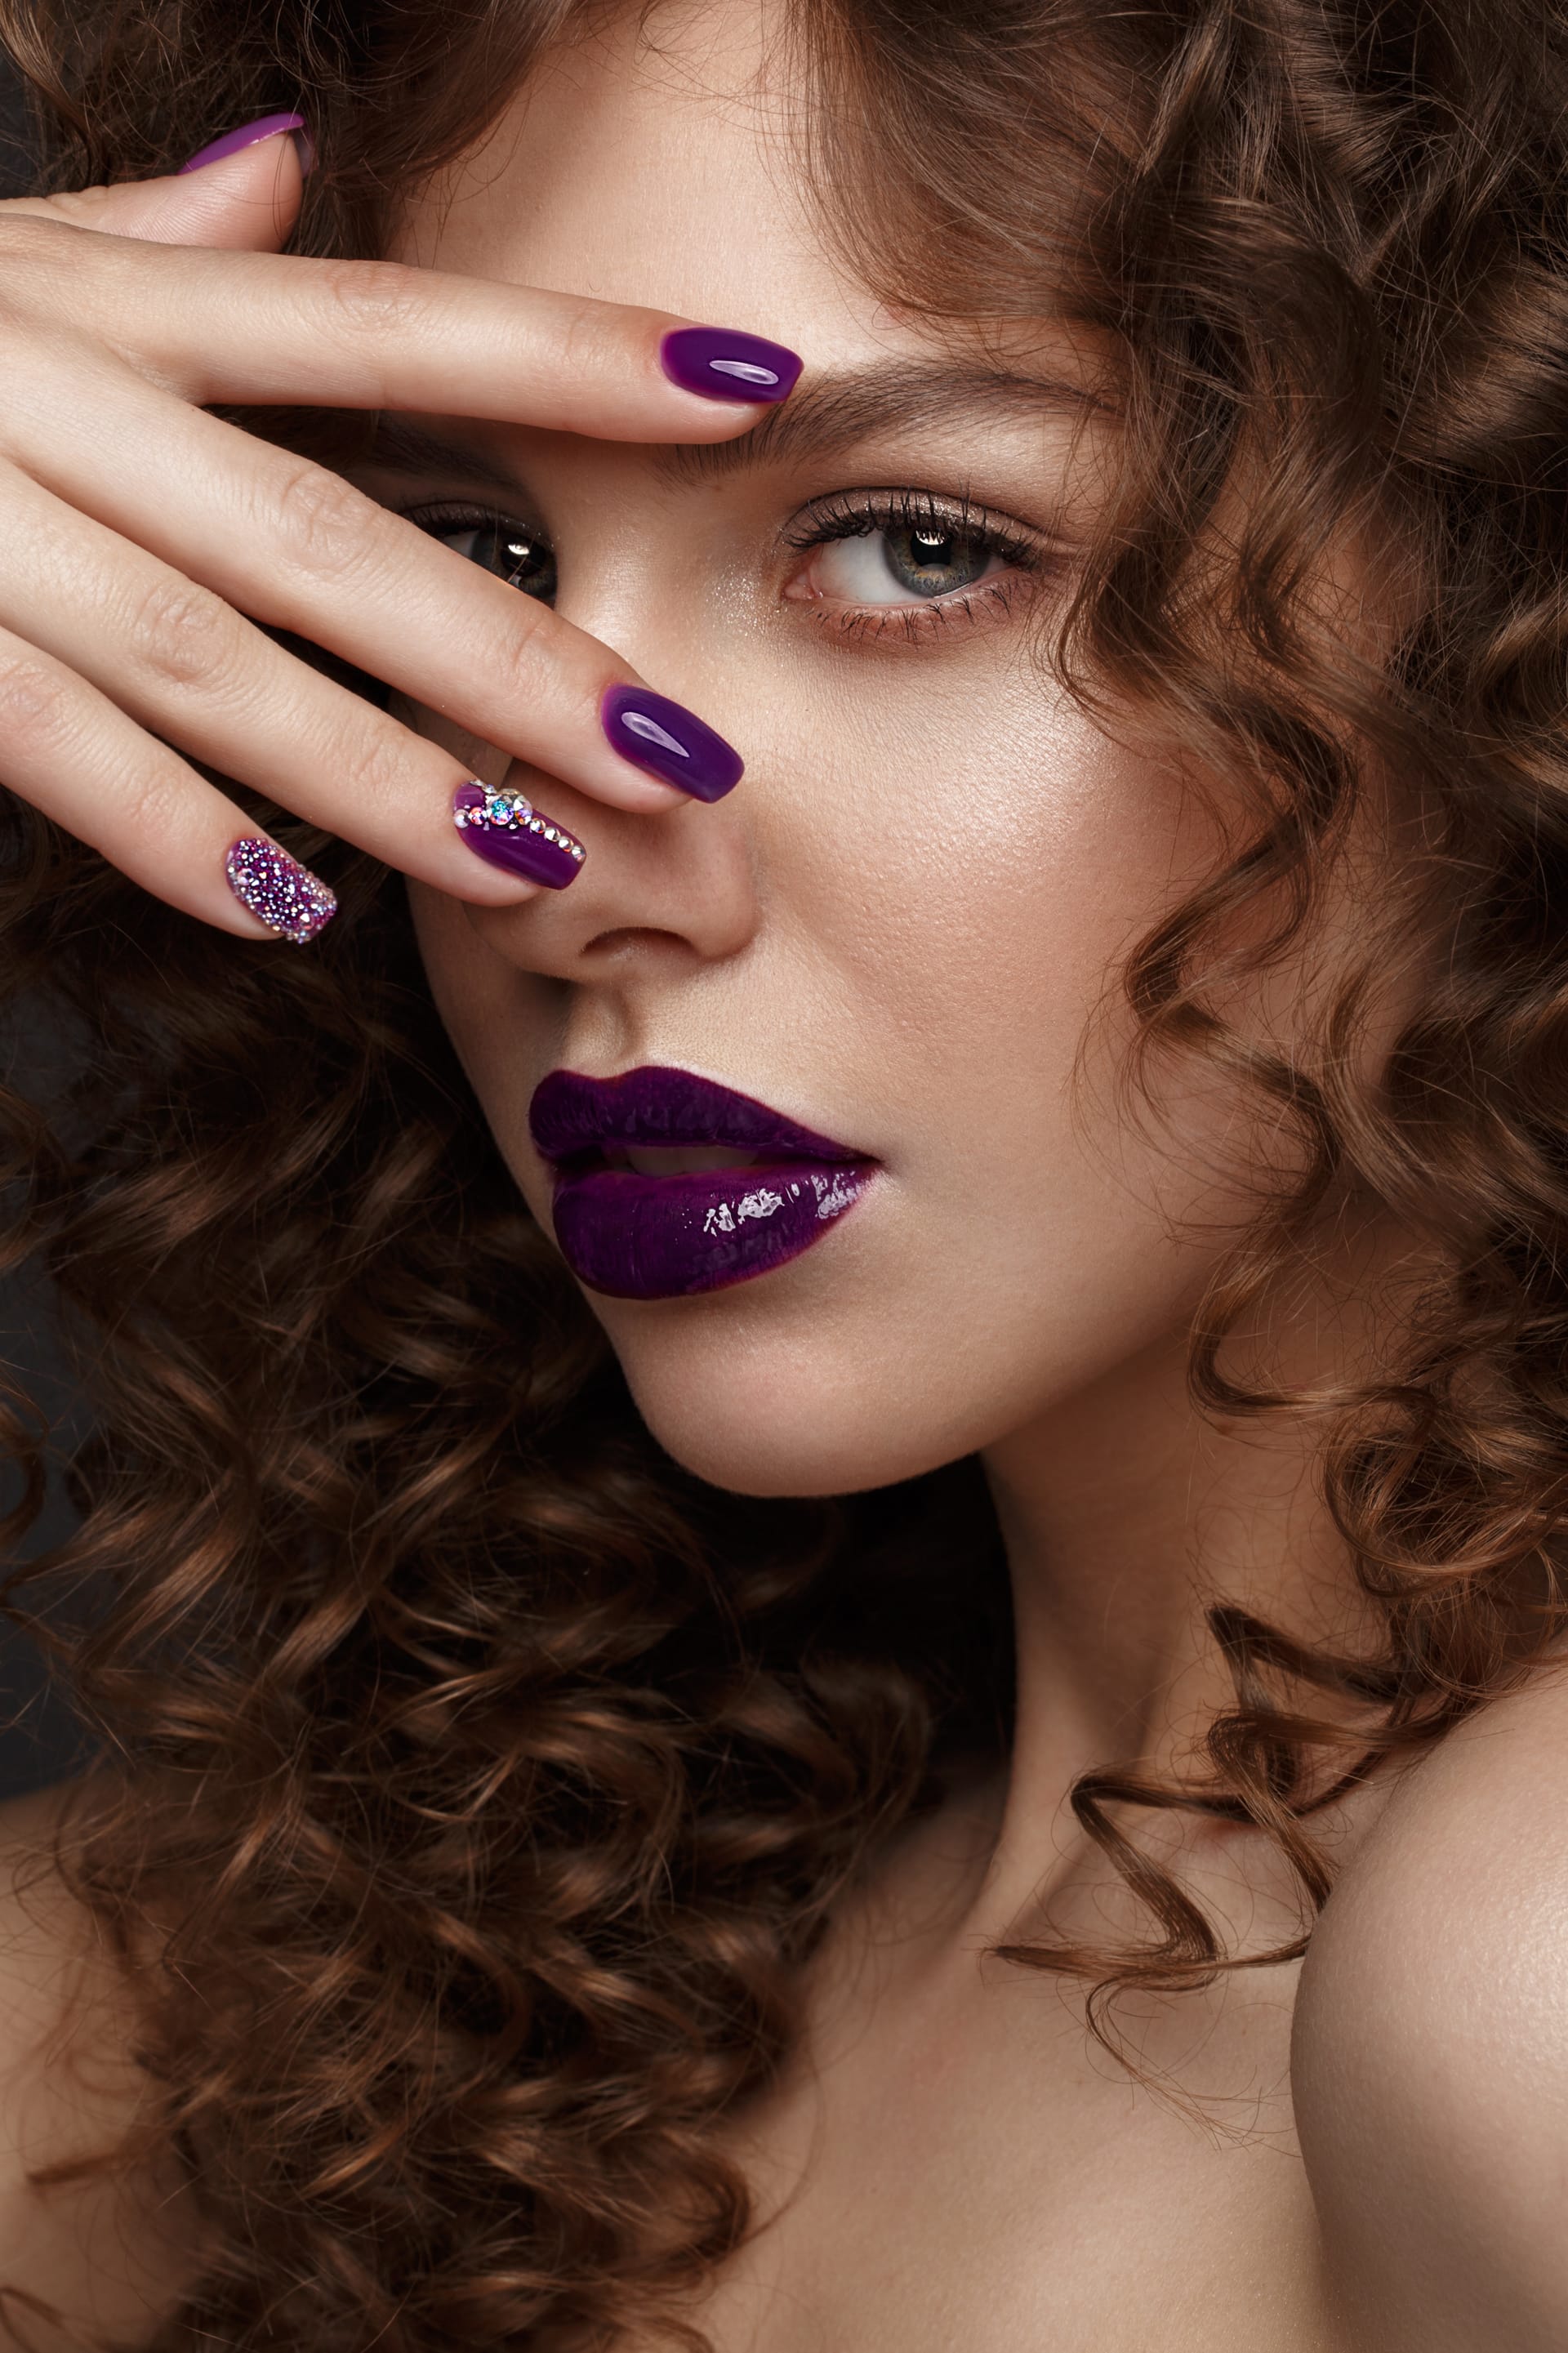 Lips curls design manicure nails beauty face photos shot studio